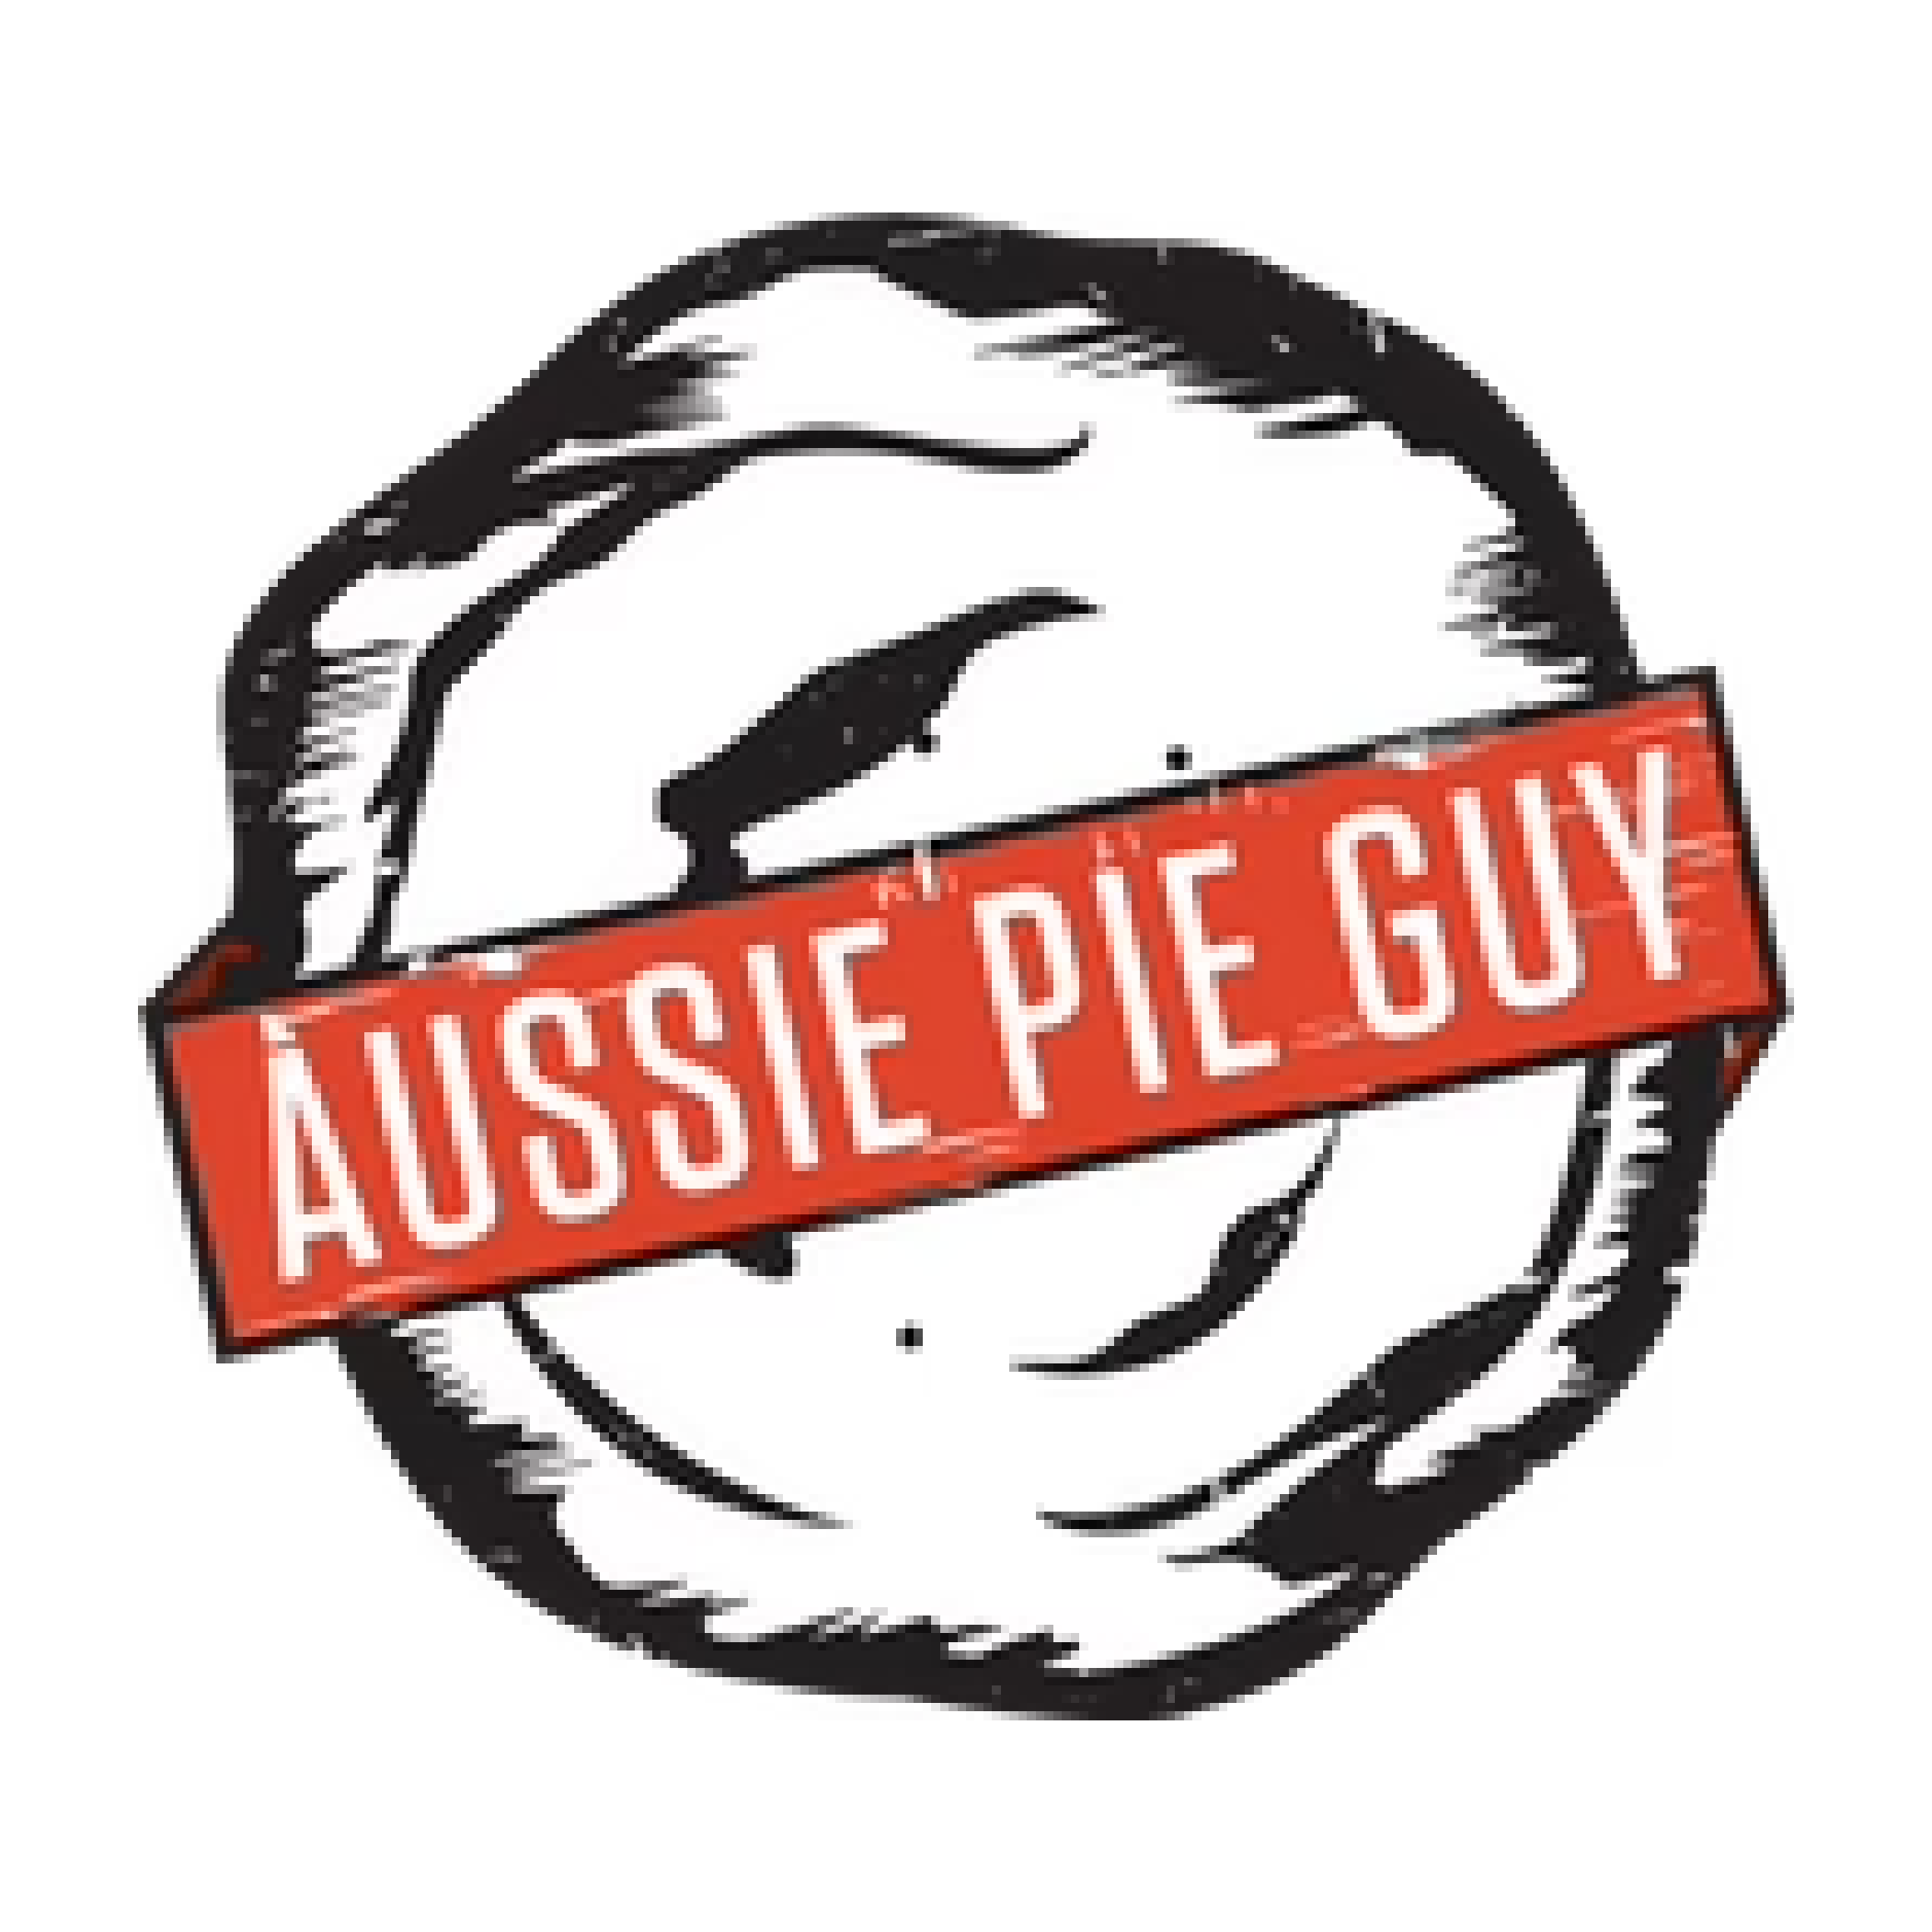 Aussie Pie Guy